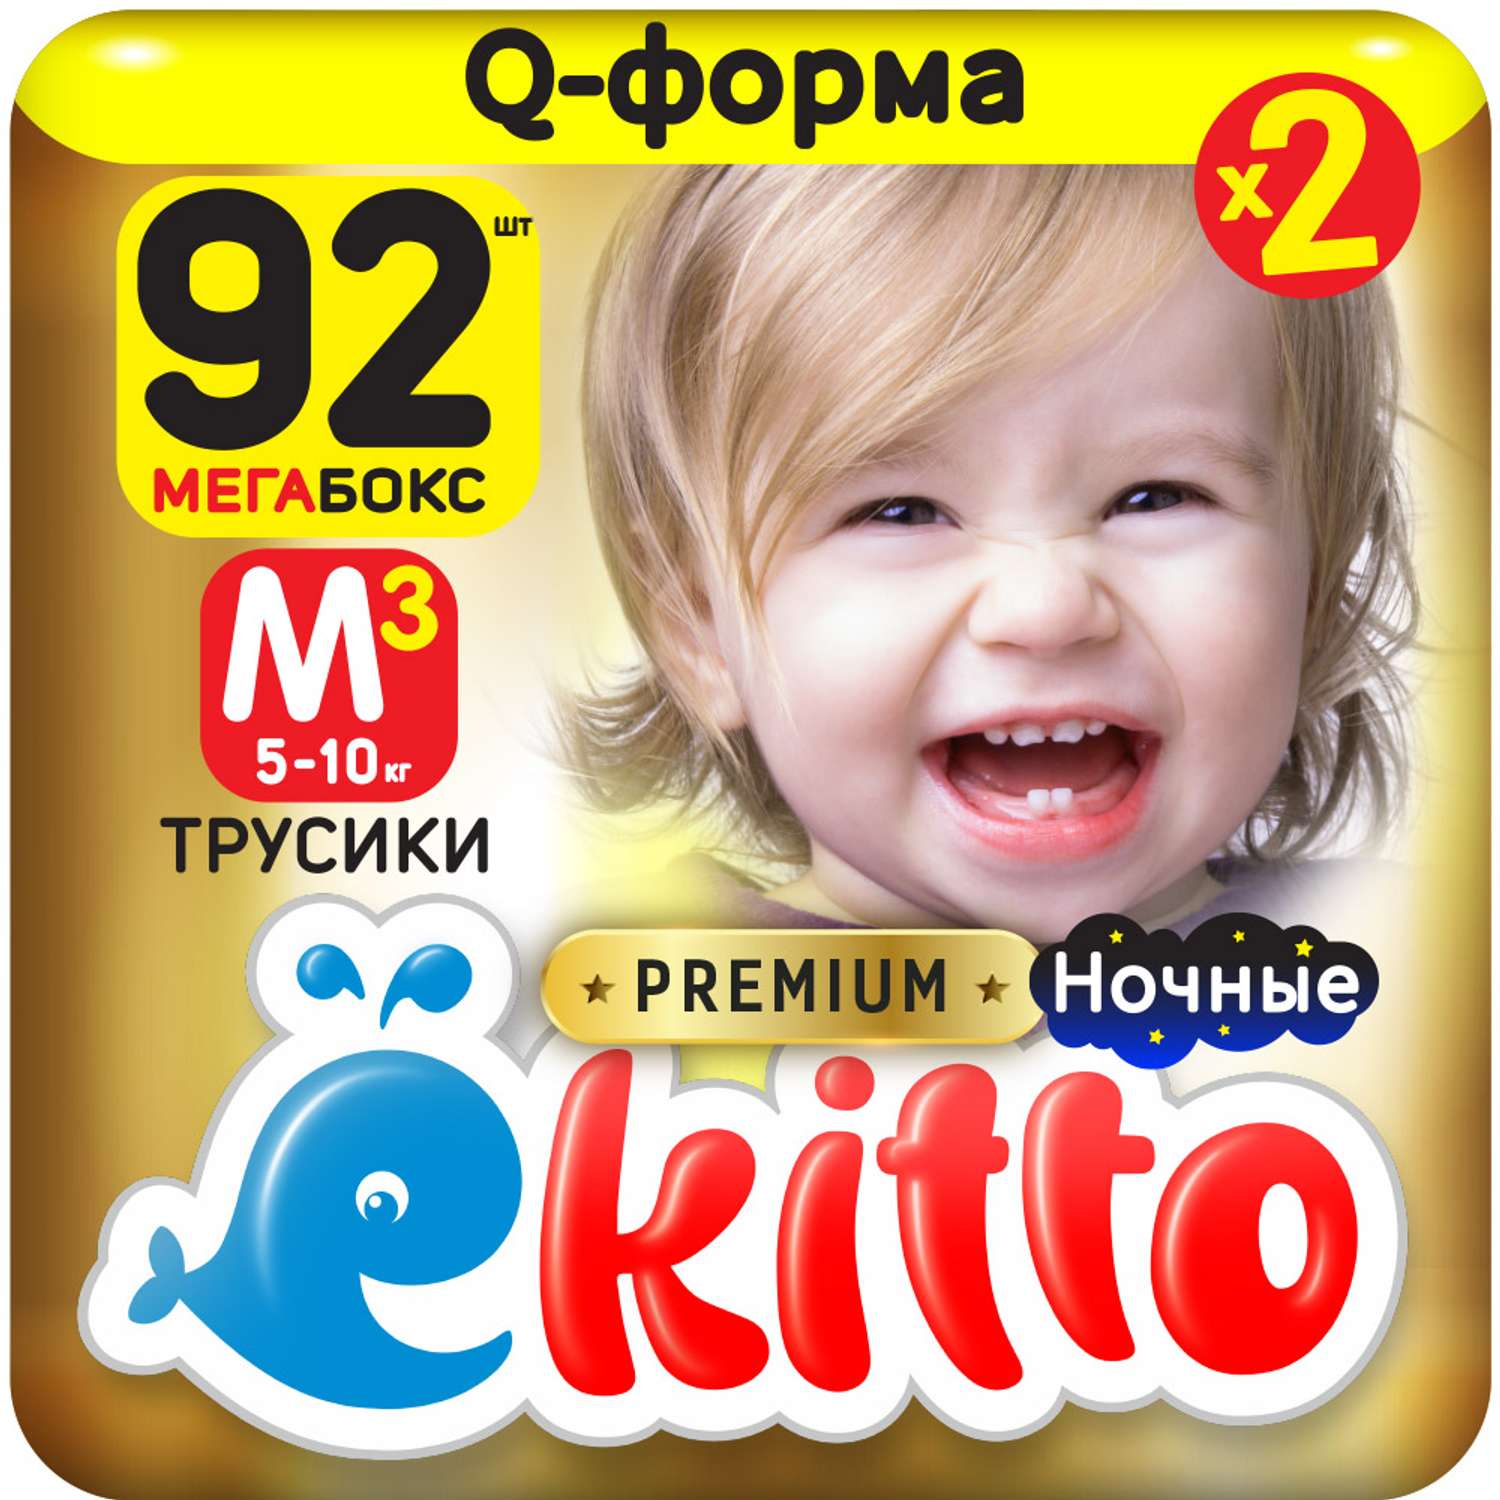 Подгузники-трусики Ekitto 3 размер M для новорожденных детей от 5-10 кг 92 шт - фото 1